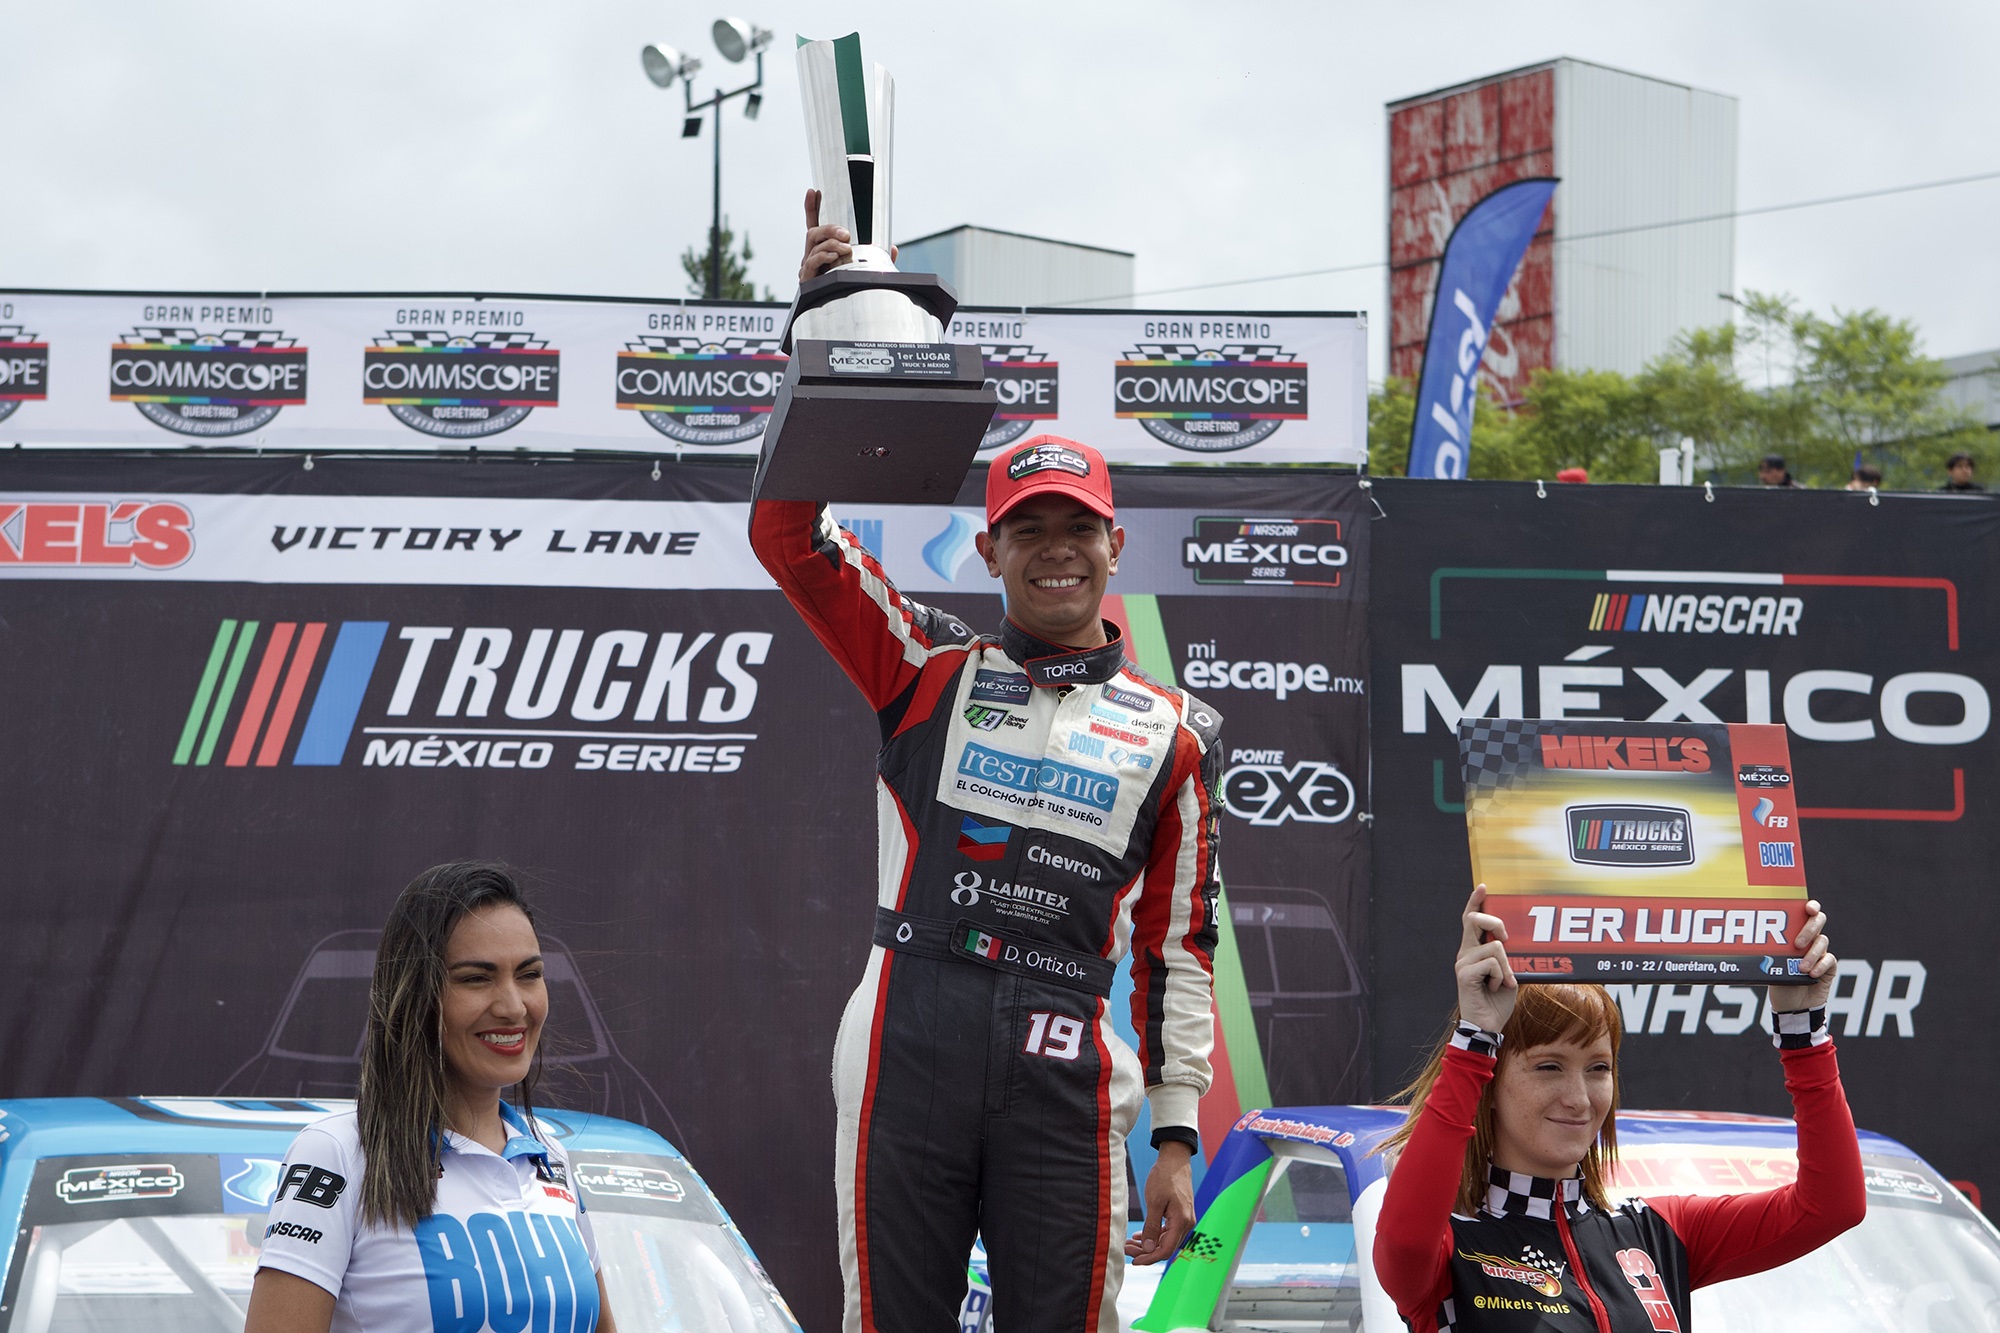 En Querétaro, llegó el 6to triunfo de Trucks México Series para Diego Ortíz